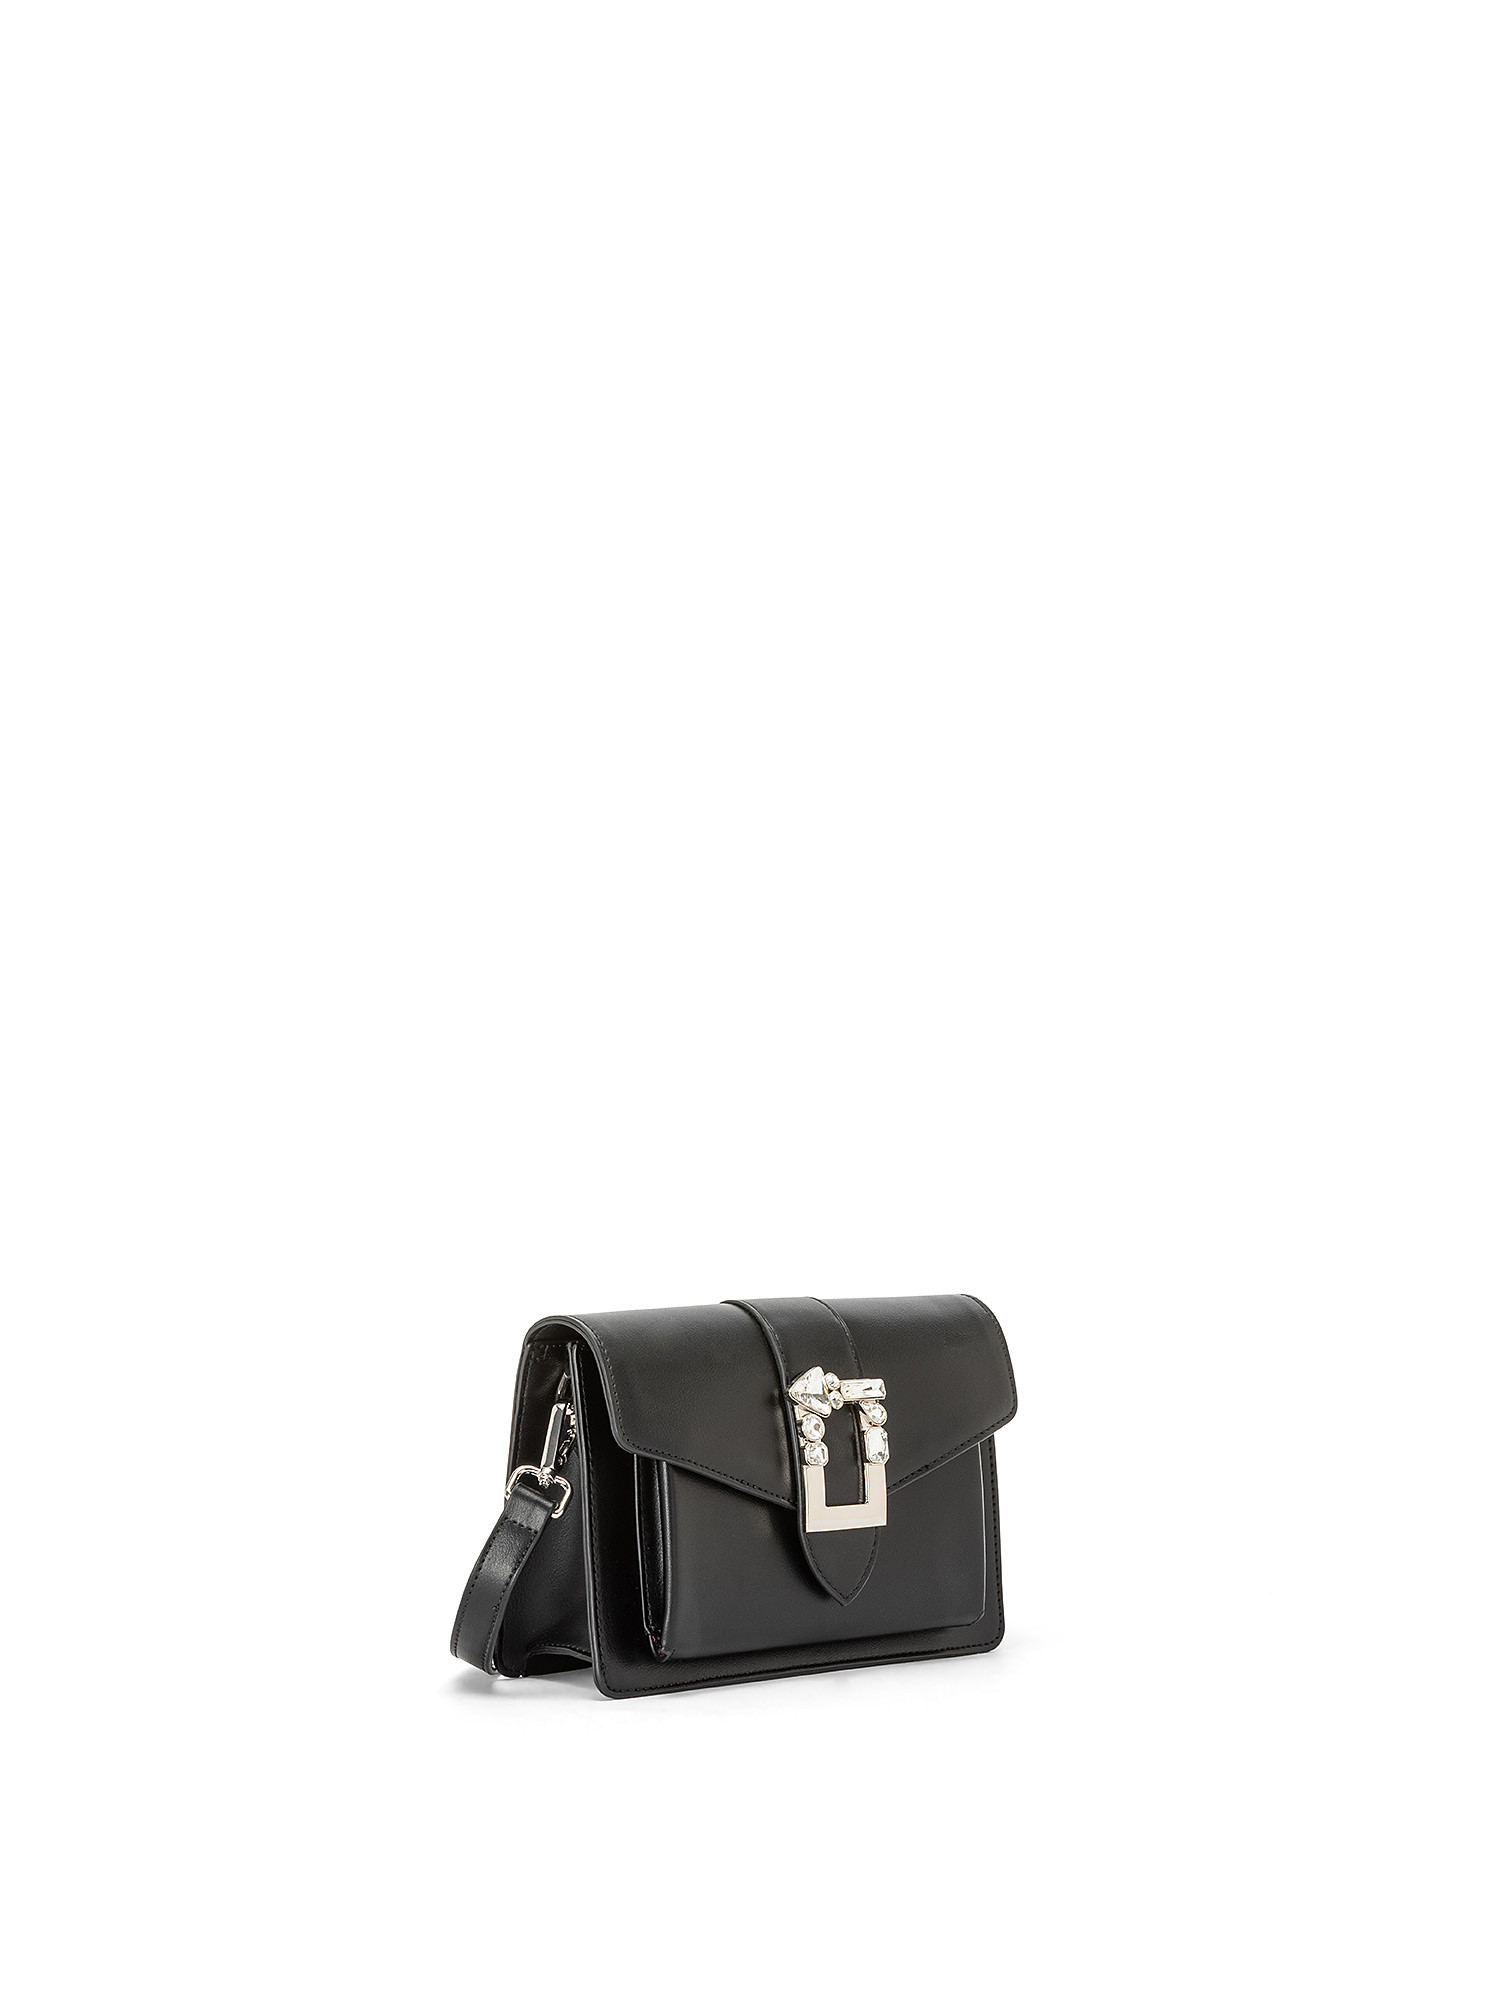 Gaudì - Victoria shoulder bag, Black, large image number 1